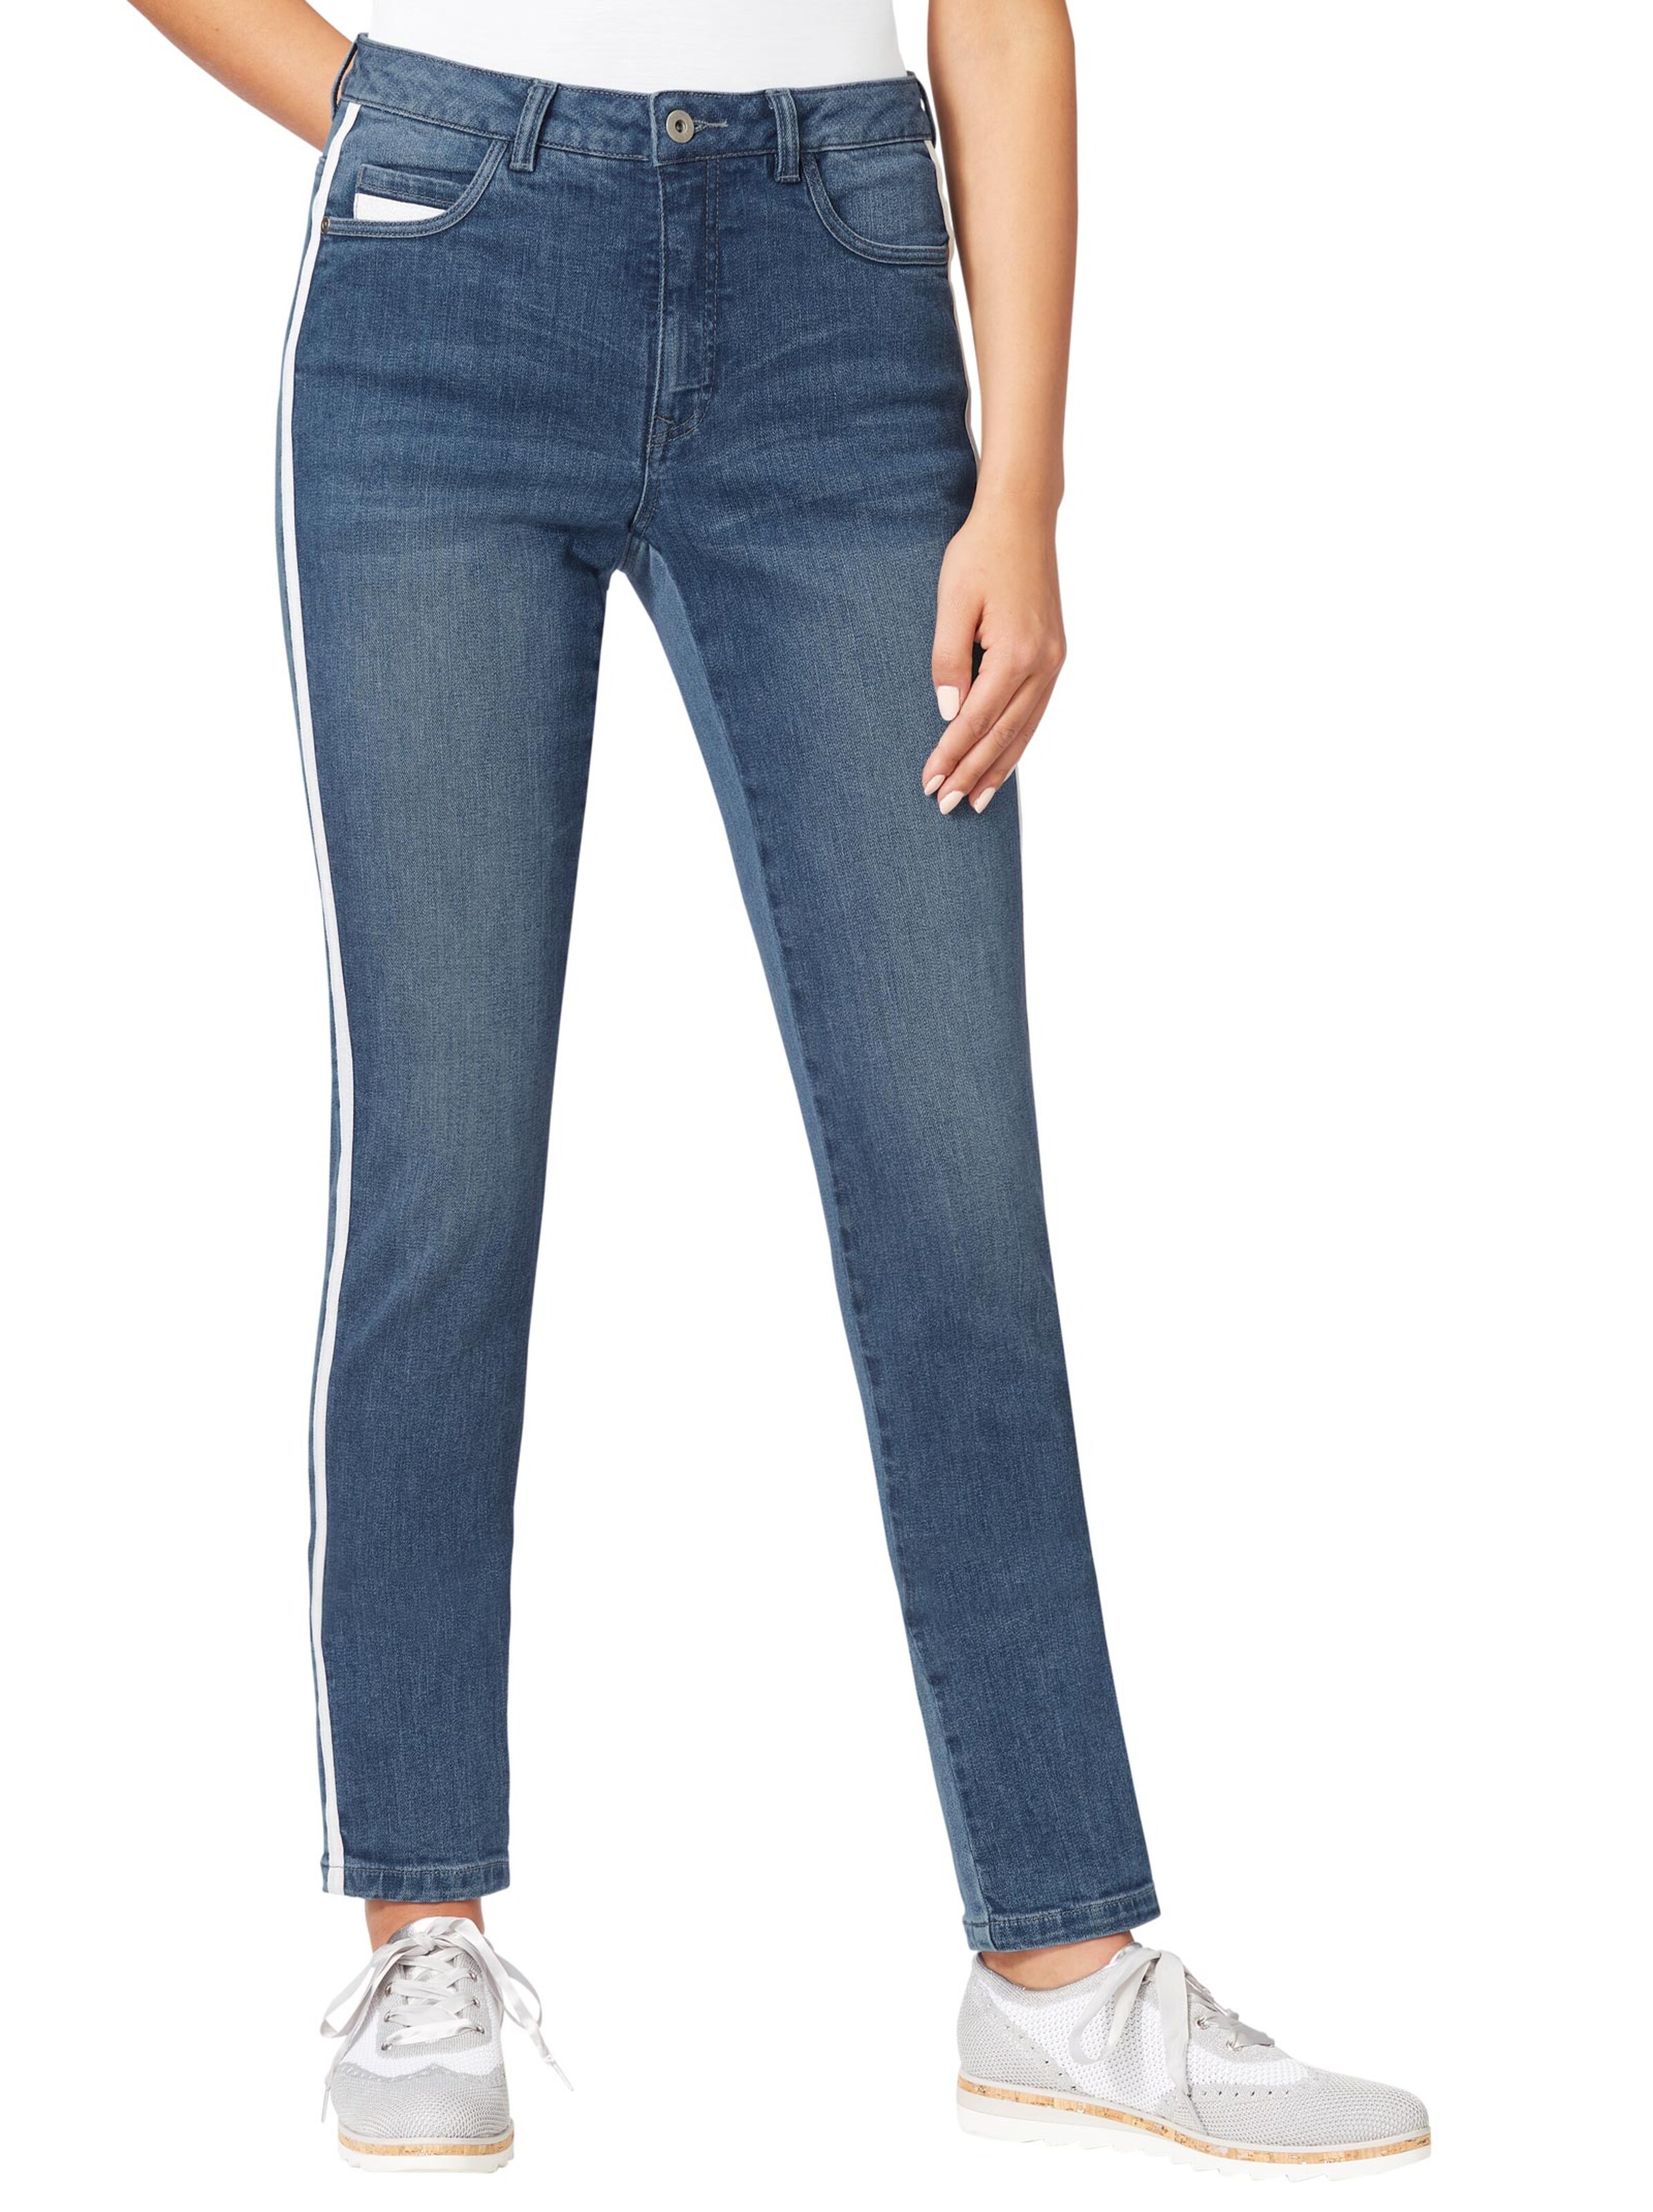 Damenmode Jeans 5-Pocket-Jeans in dark blue 